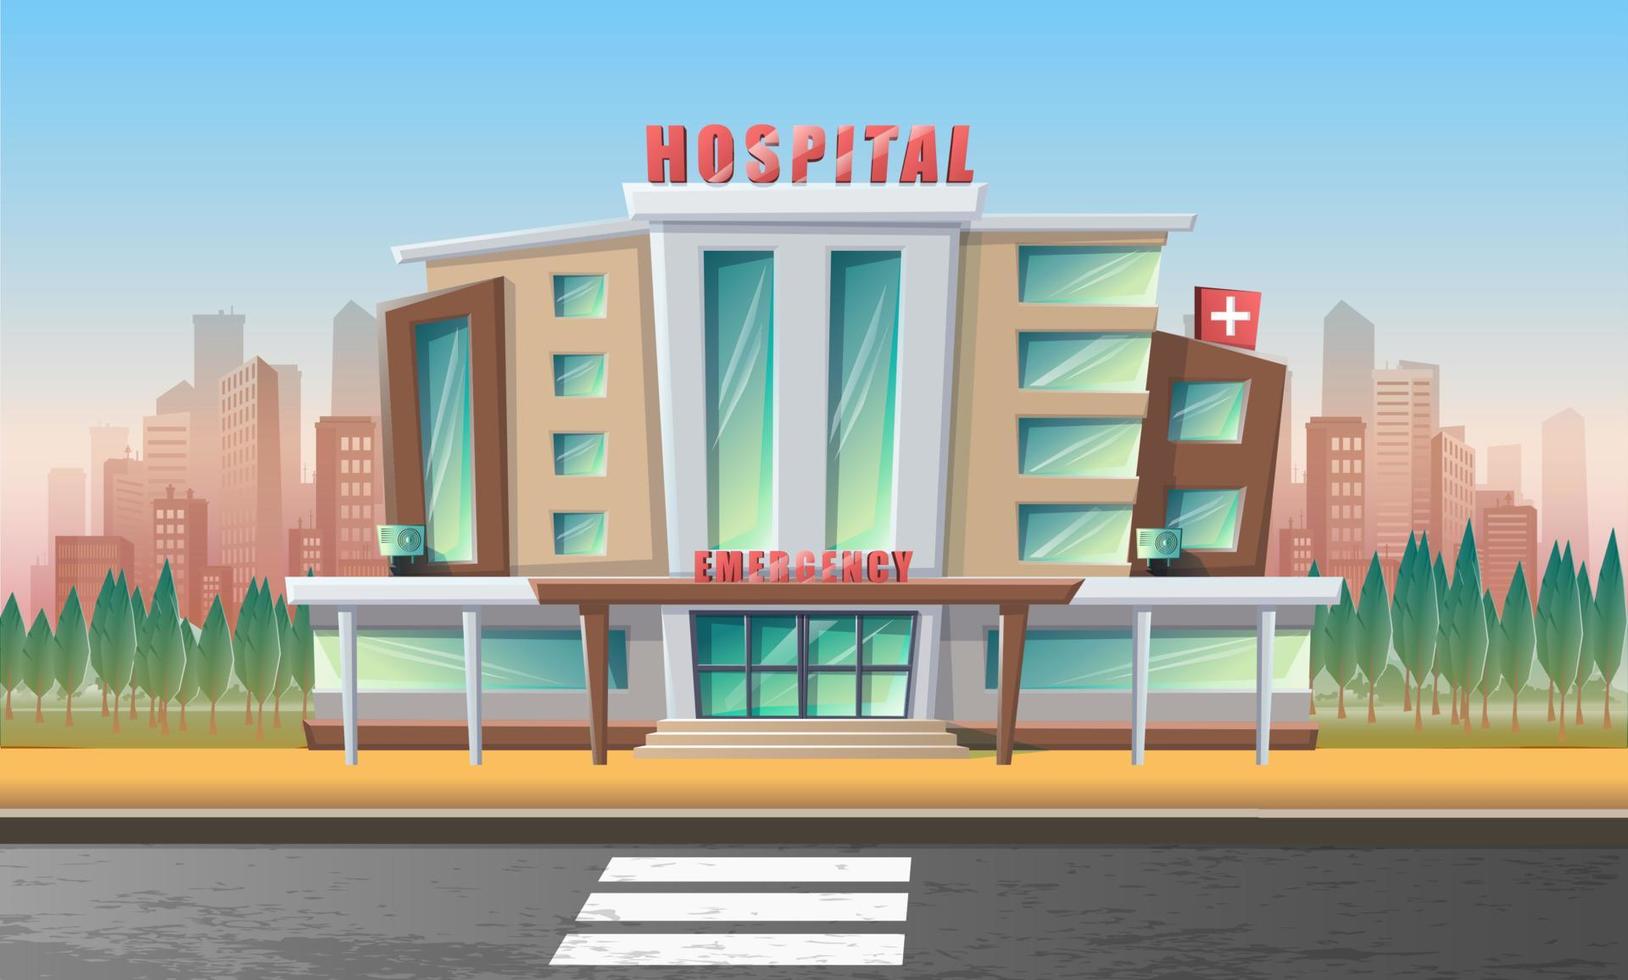 vektor tecknad stil illustration av sjukhus akut byggnad med stadslandskap bakom och väg framför.